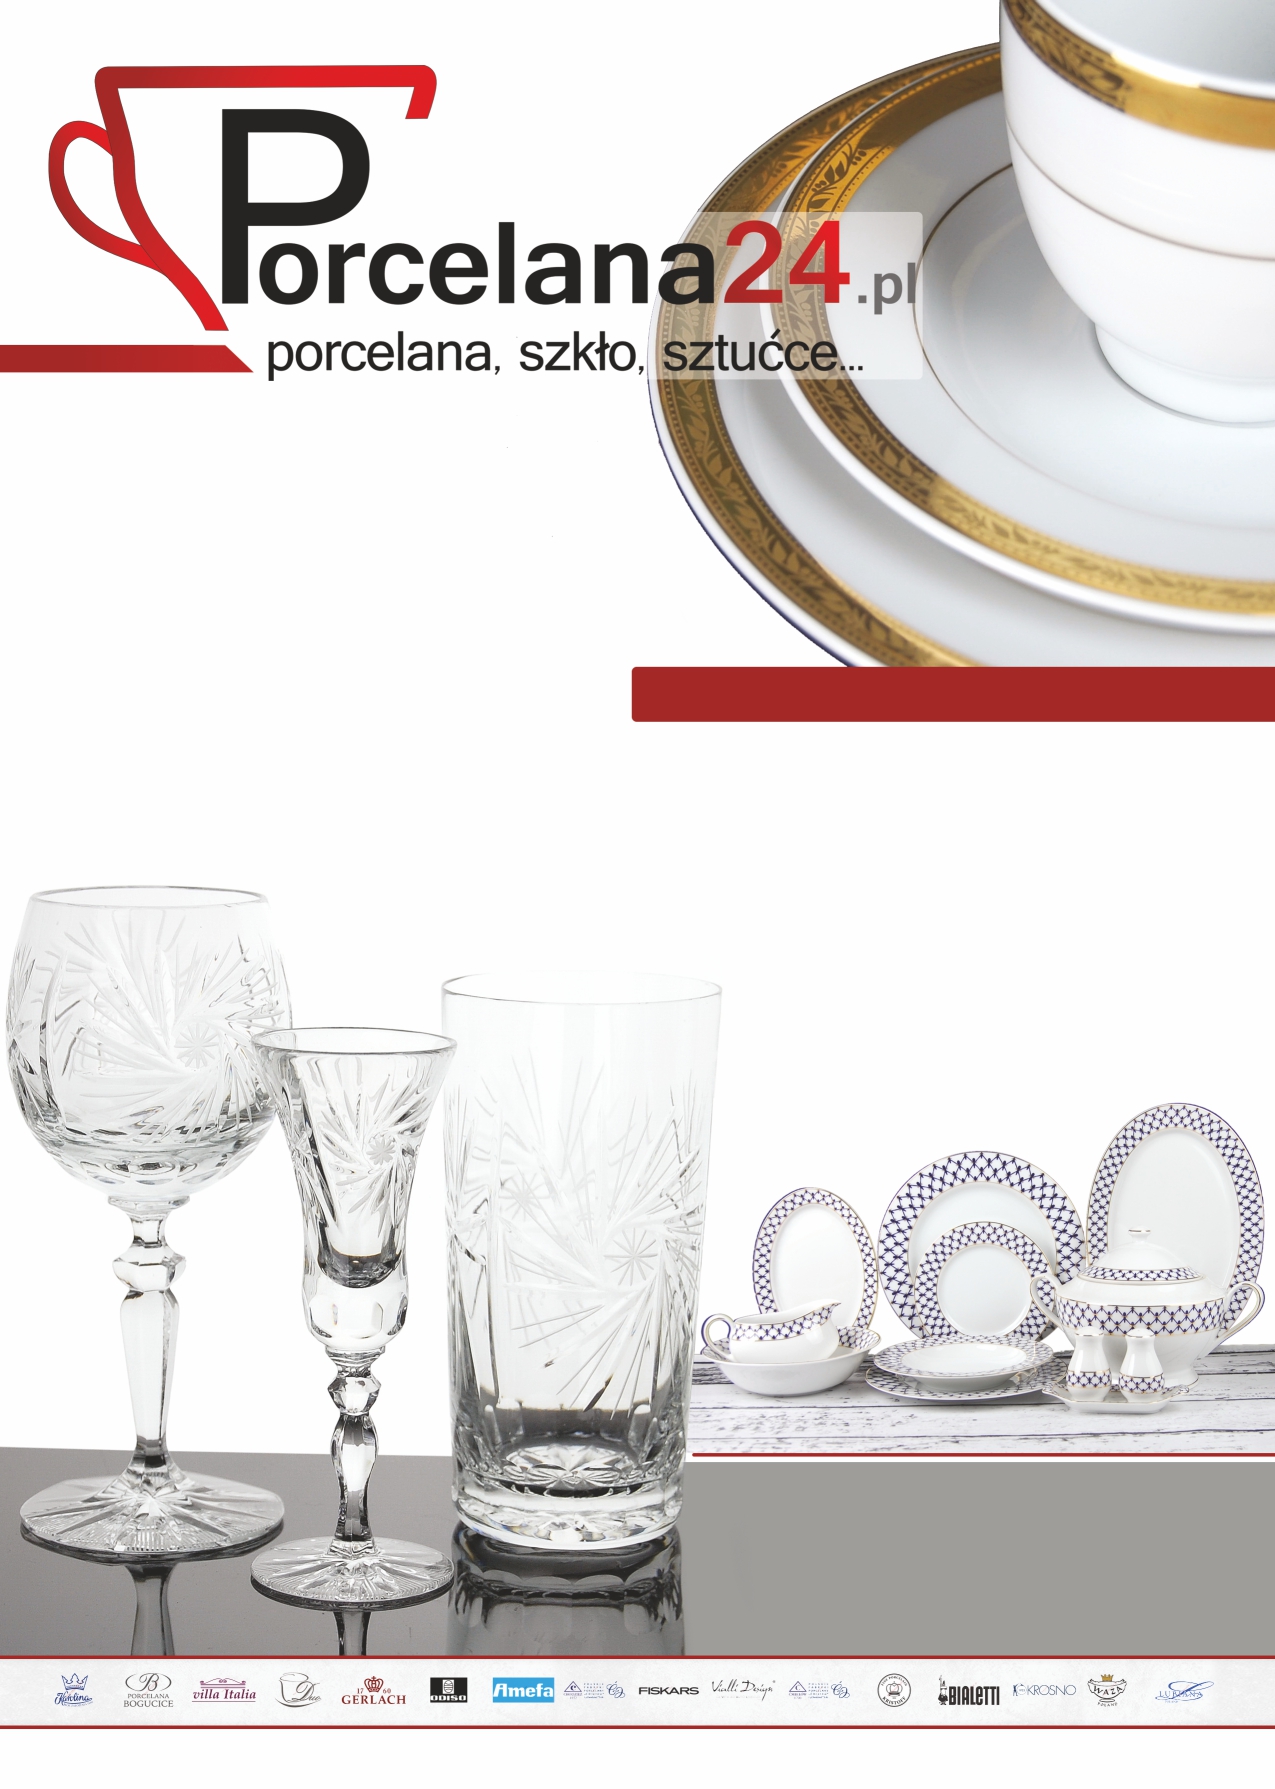 Działalność rmy AP-POL opiera się na sprzedaży detalicznej i hurtowej akcesoriów kuchennych takich jak porcelana stołowa, szkło, sztućce i inne wyroby ceramiczne.